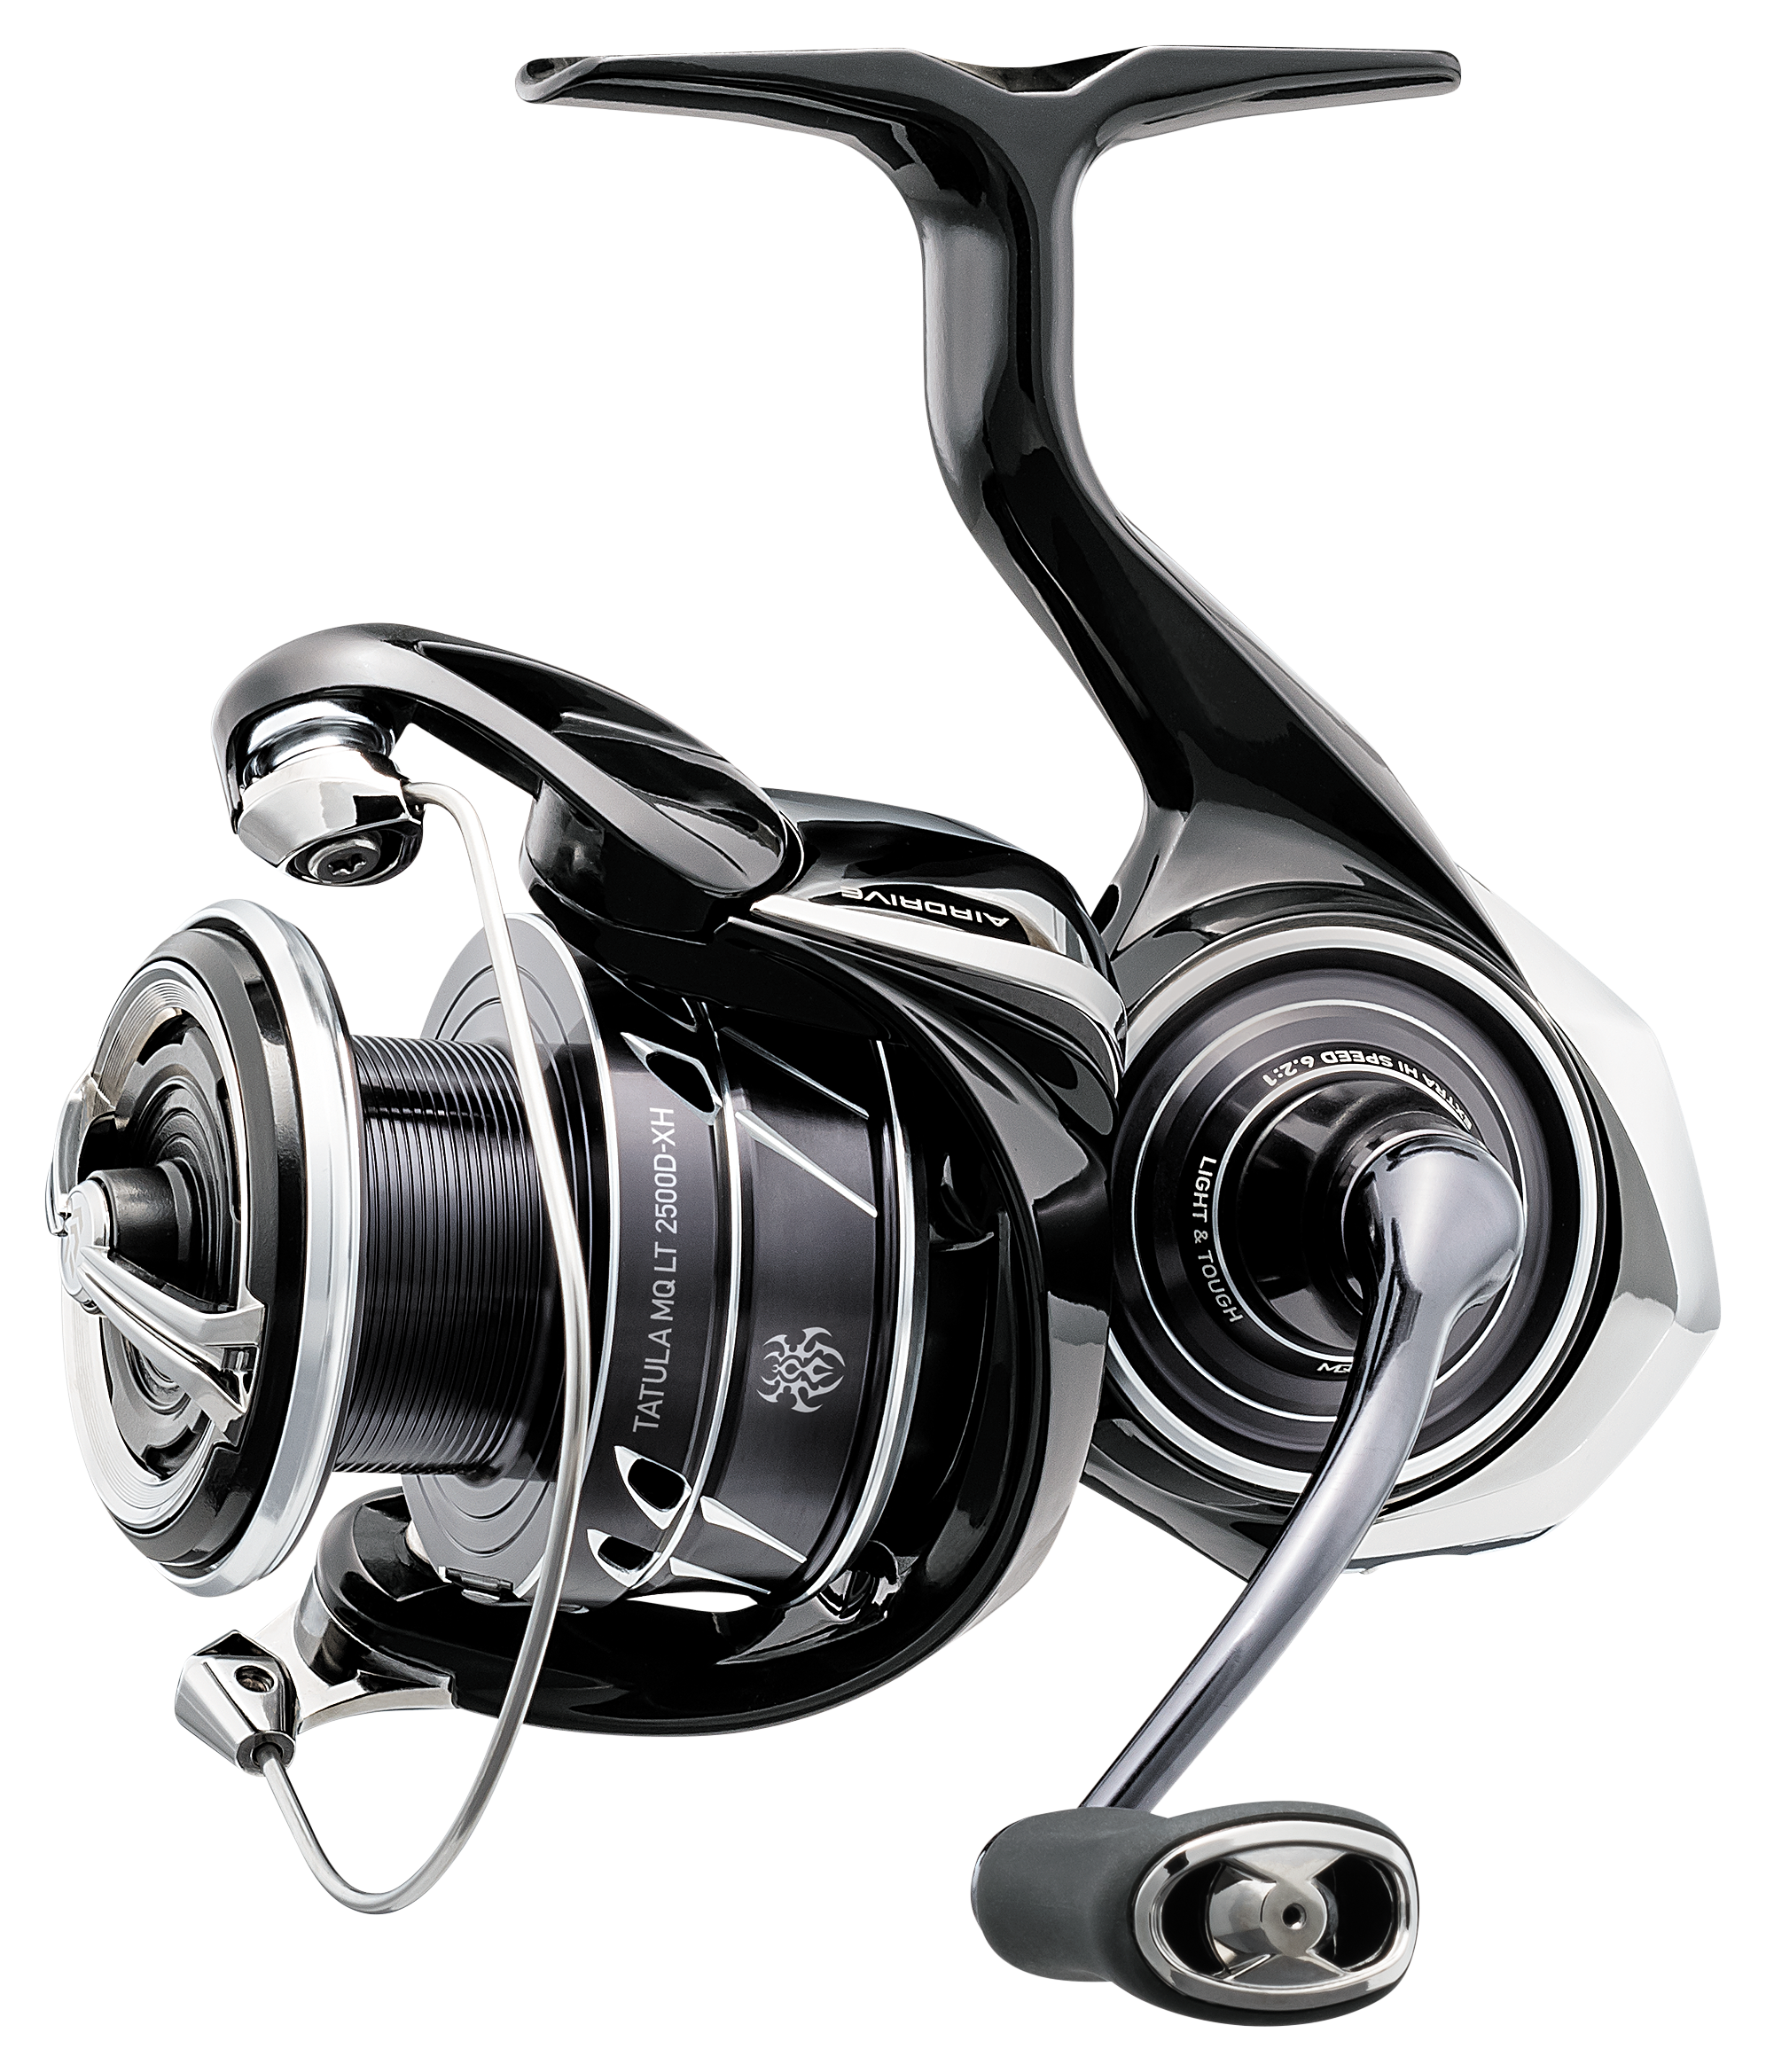 New 2021 DAIWA BG MQ Spinning Fishing Reels 3000-10000 Gear Ratio 5.7:1 Max  Drag12kg 6BB Trolling Reel Fishing Wheel Metal Spool